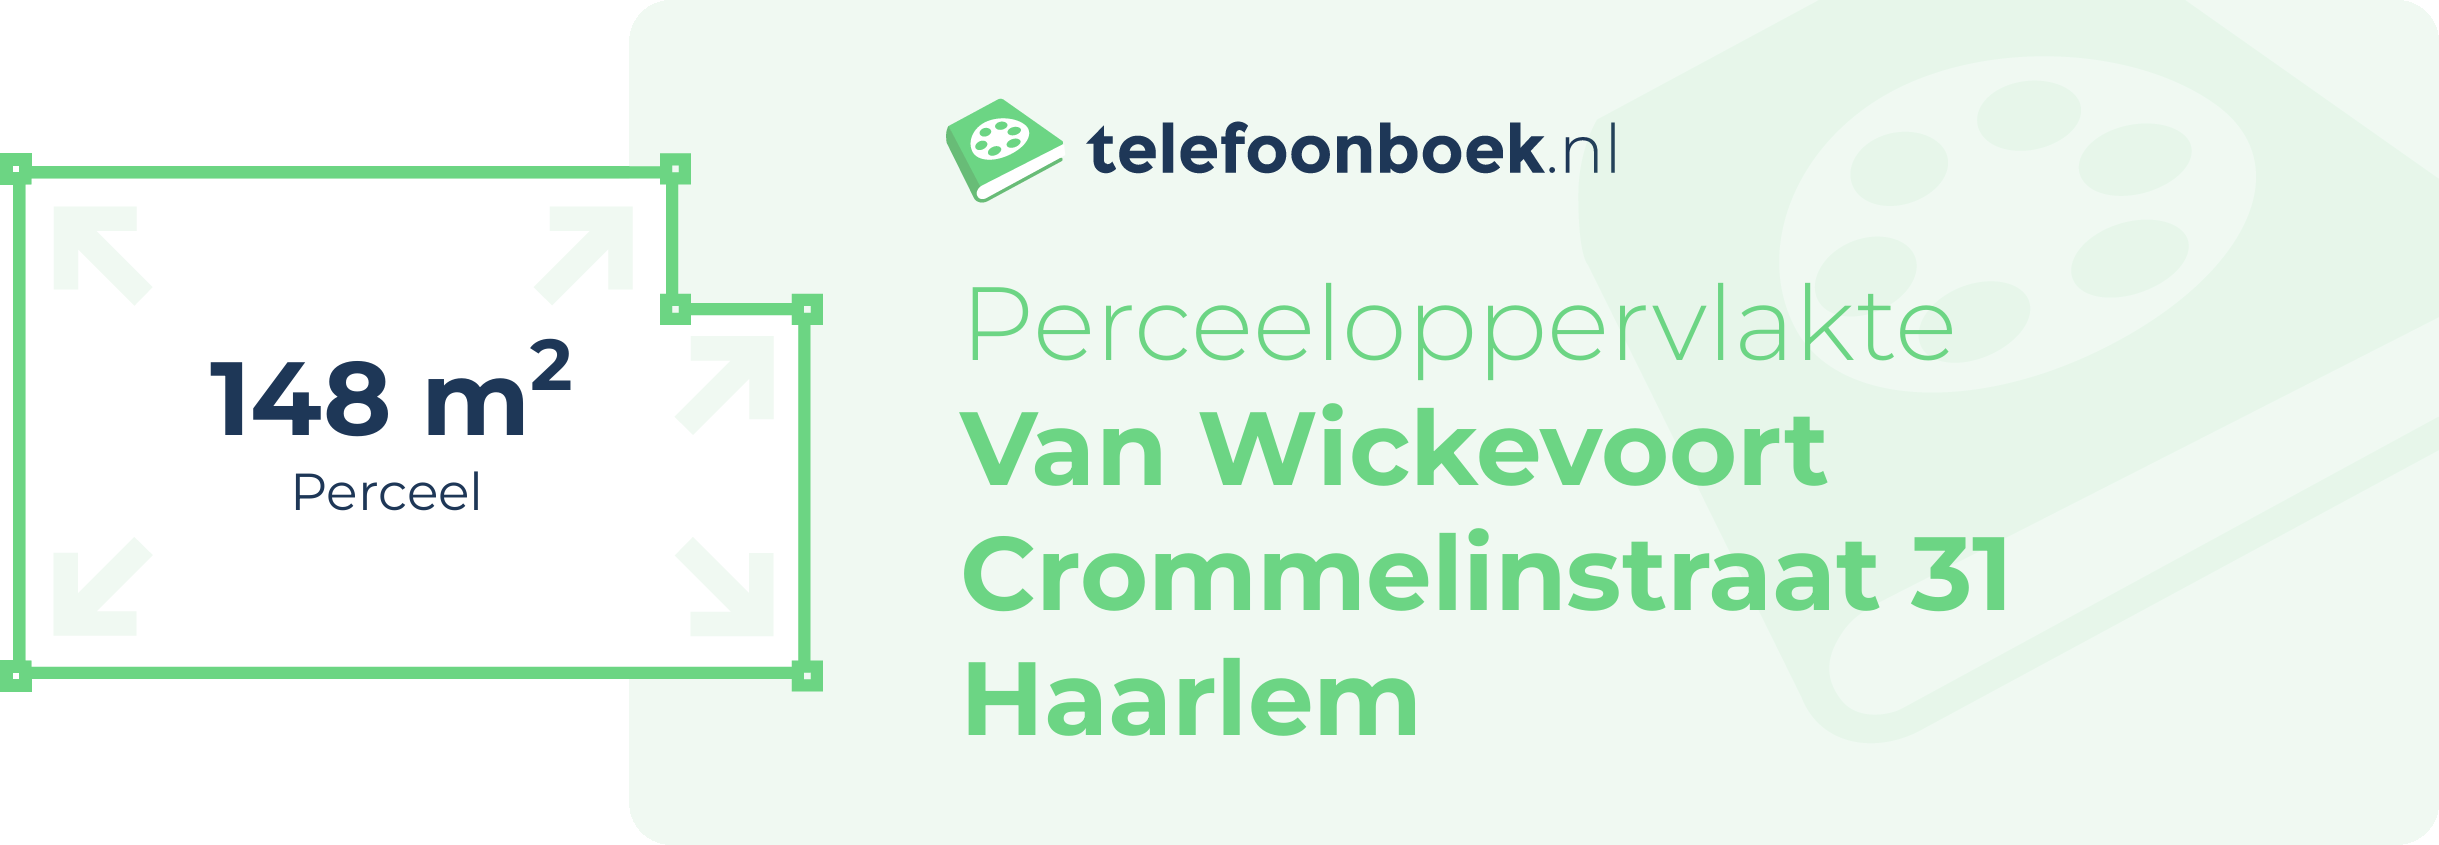 Perceeloppervlakte Van Wickevoort Crommelinstraat 31 Haarlem